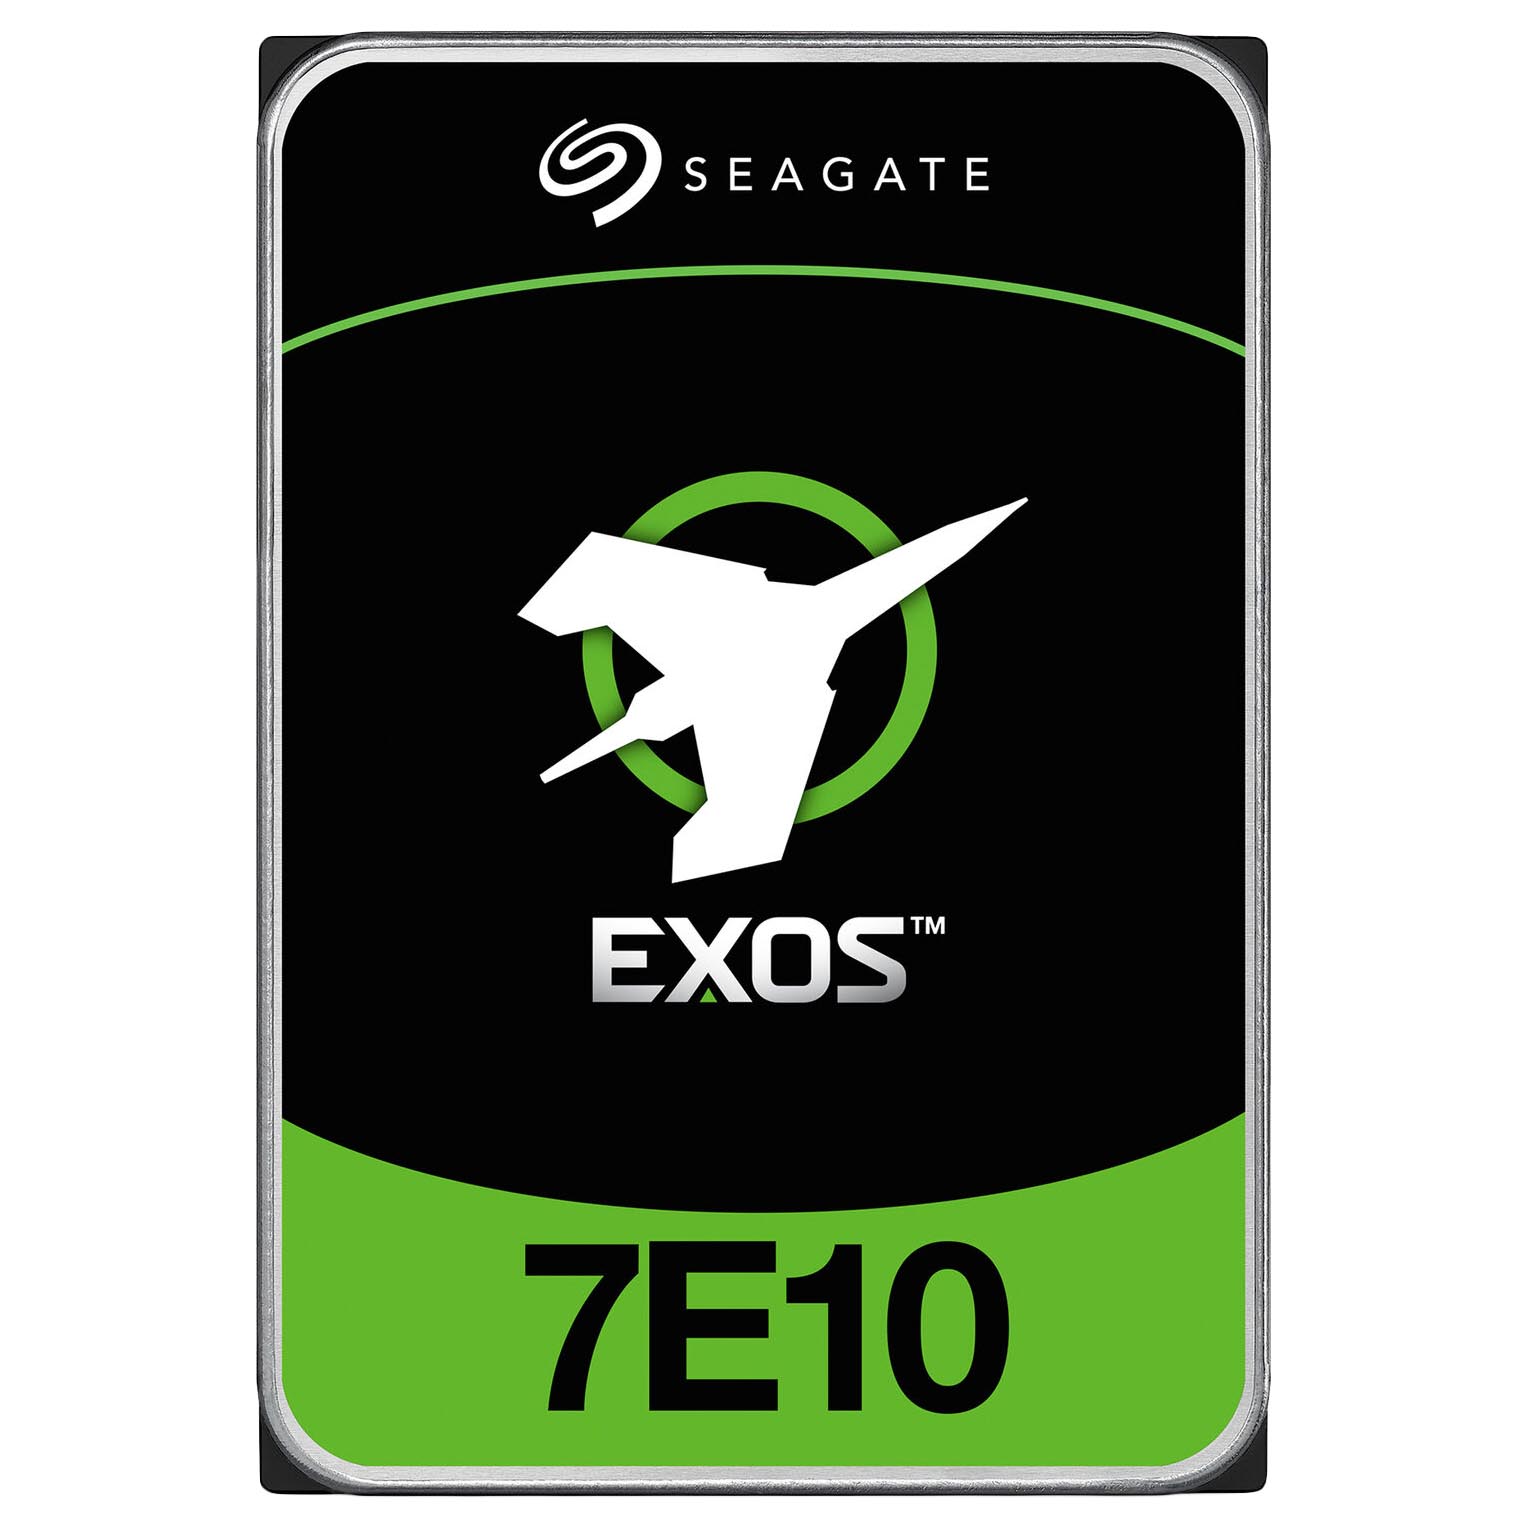 цена Внутренний жесткий диск Seagate Exos 7E10, ST2000NM001B, 2 Тб